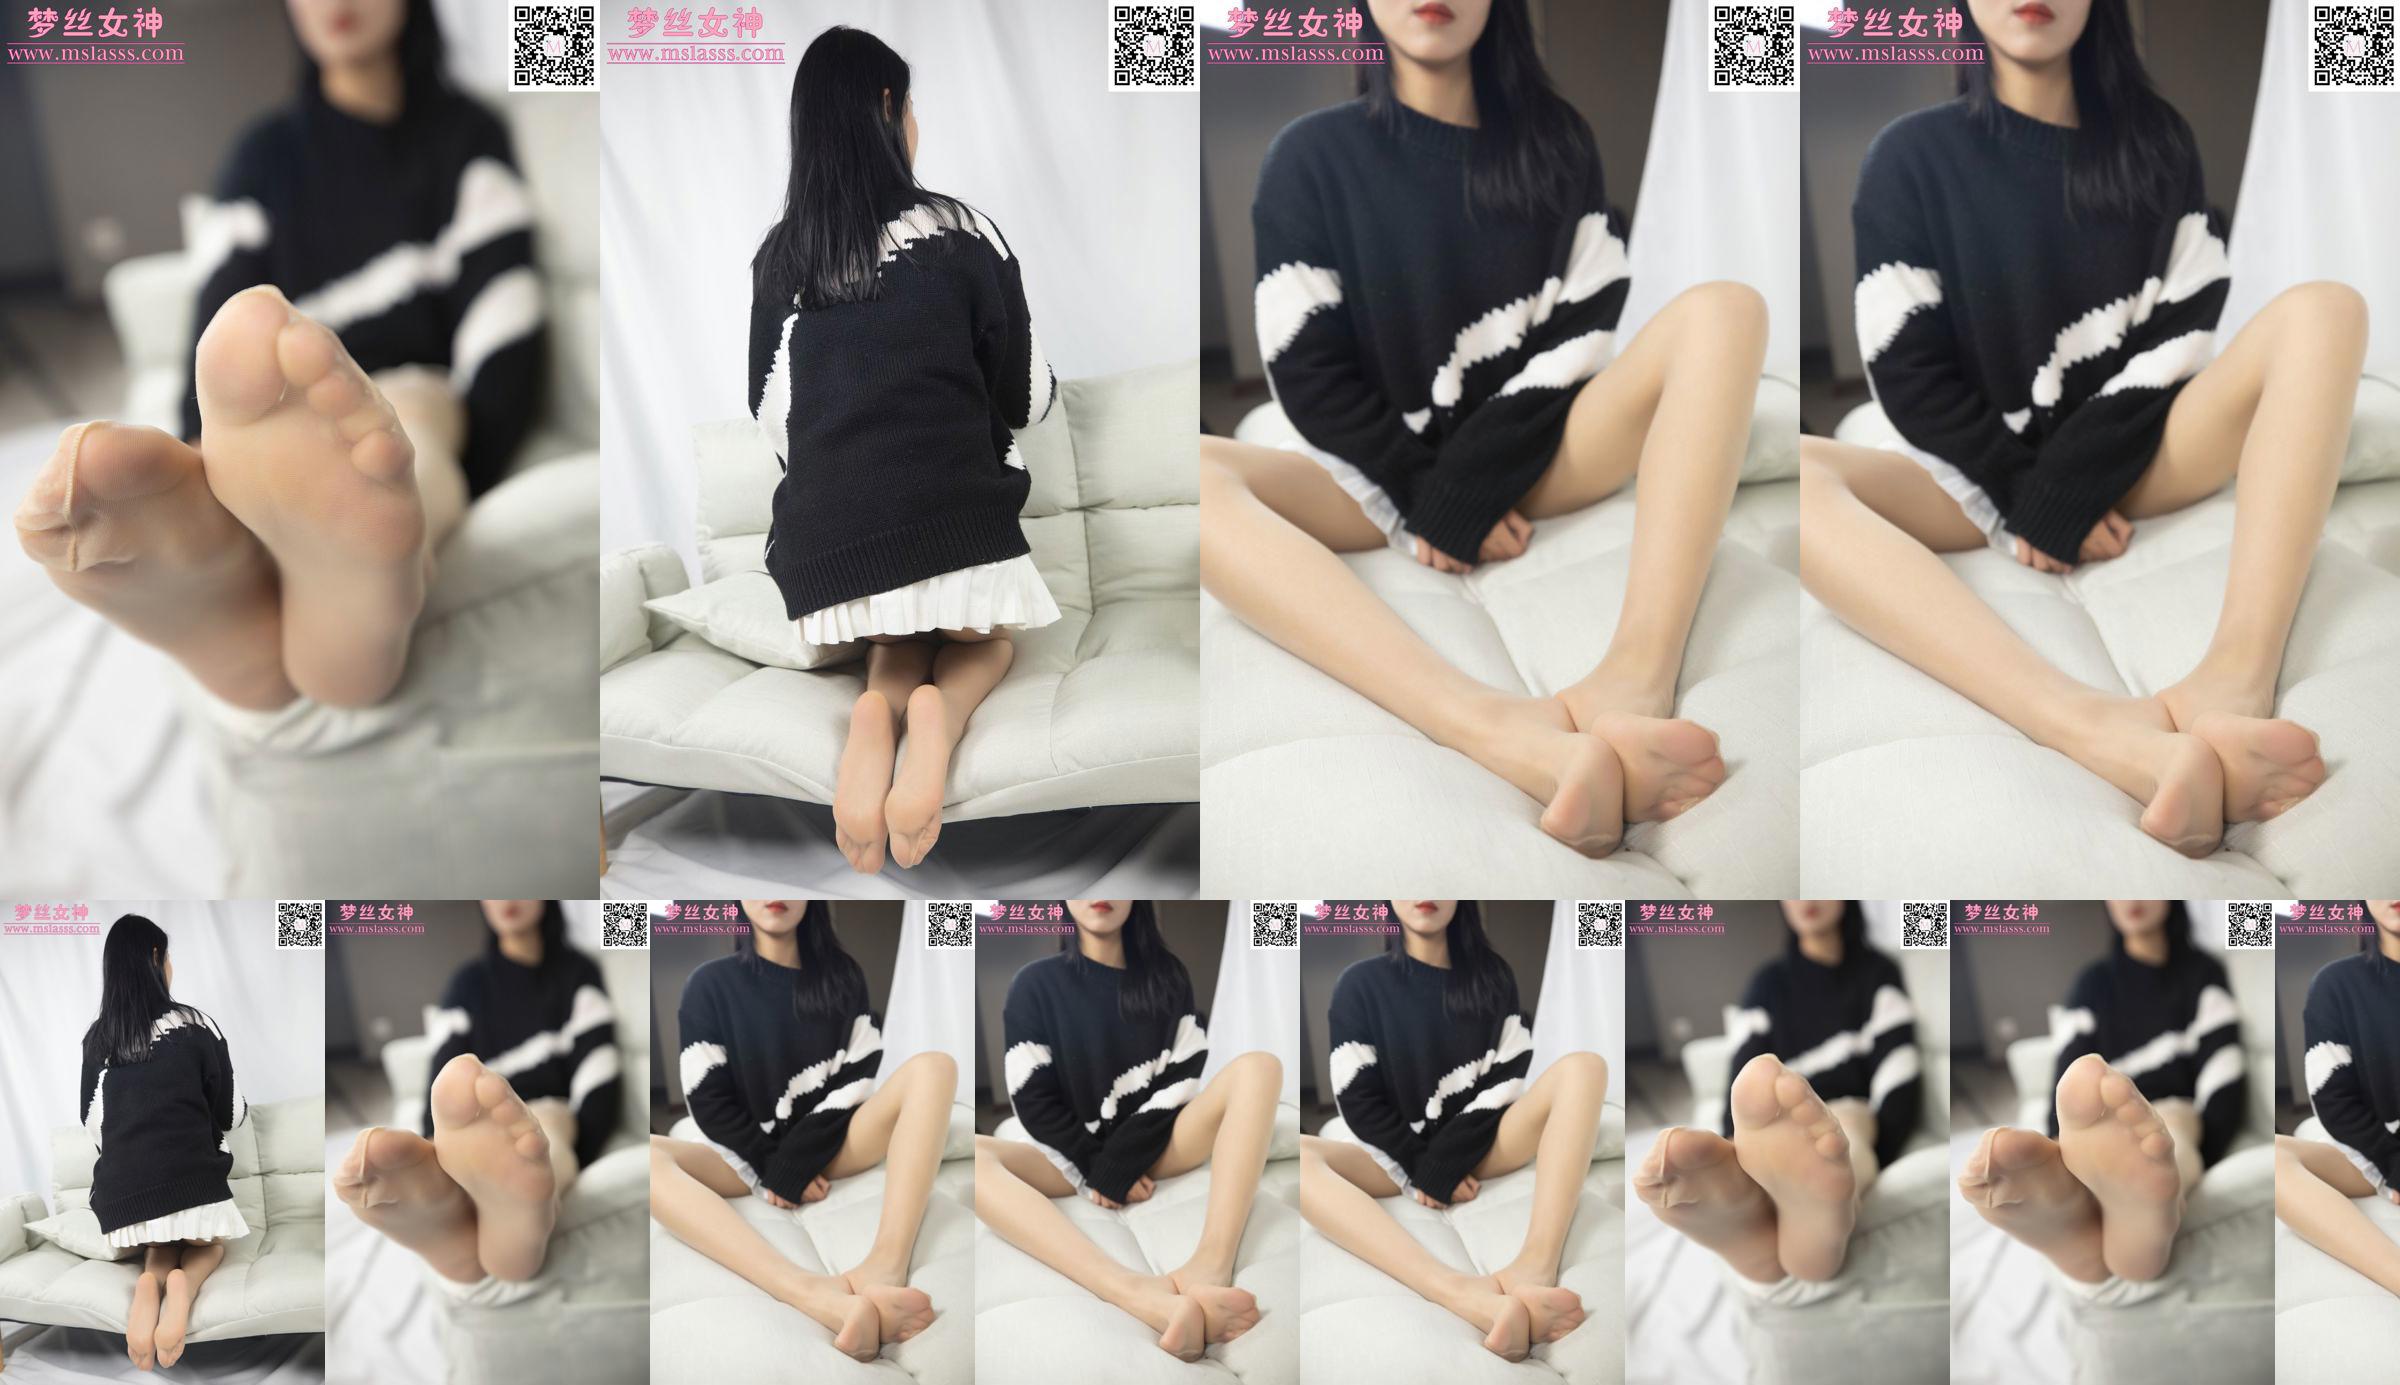 [Göttin der Träume MSLASS] Xiaomus Pullover kann ihre langen Beine nicht aufhalten No.083d49 Seite 1